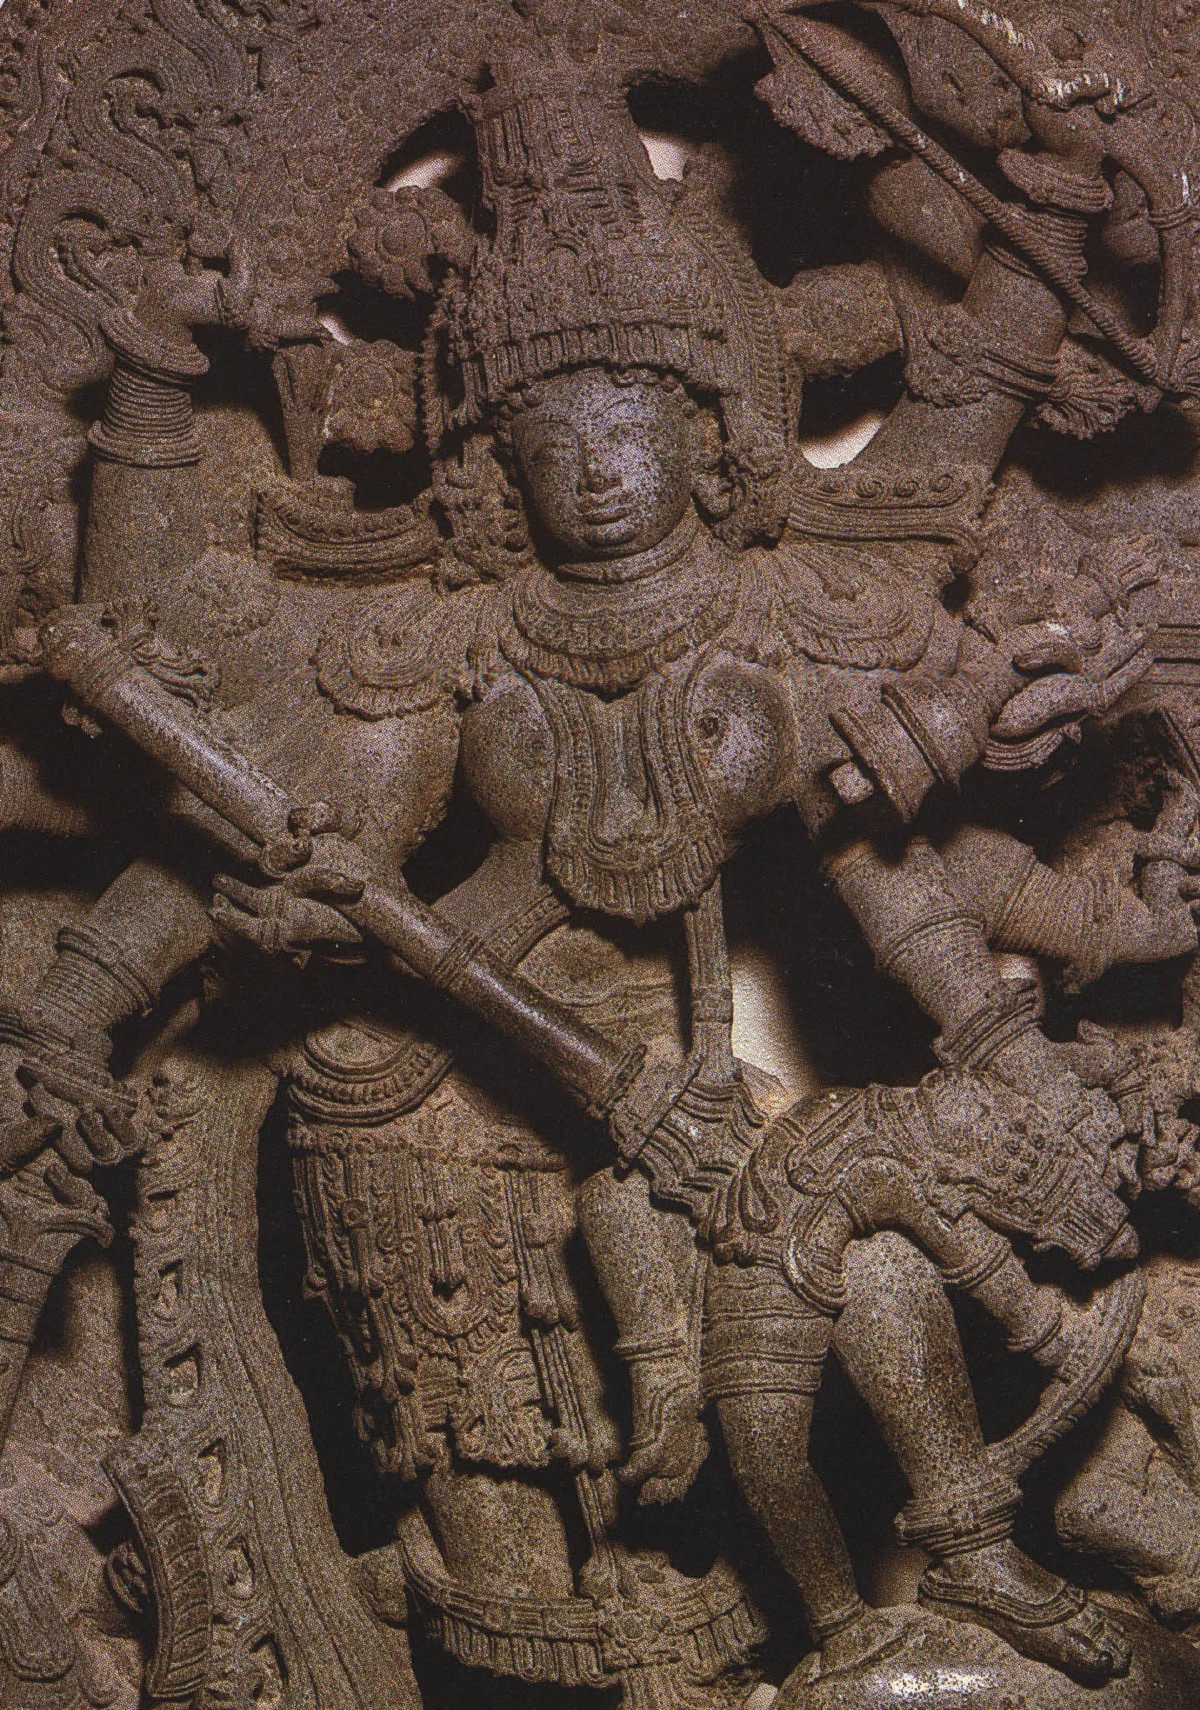 Durga tötet mit dem Flammenschwert den Büffeldämon. Die harmonischen Klänge ihrer Glocke bieten Schutz und führen sie auf den Pfad der Erleuchtung. Steinrelief, Mansur, Hoysala-Zeit, frühes 13. Jh. n. Chr., Victor & Albert Museum, London